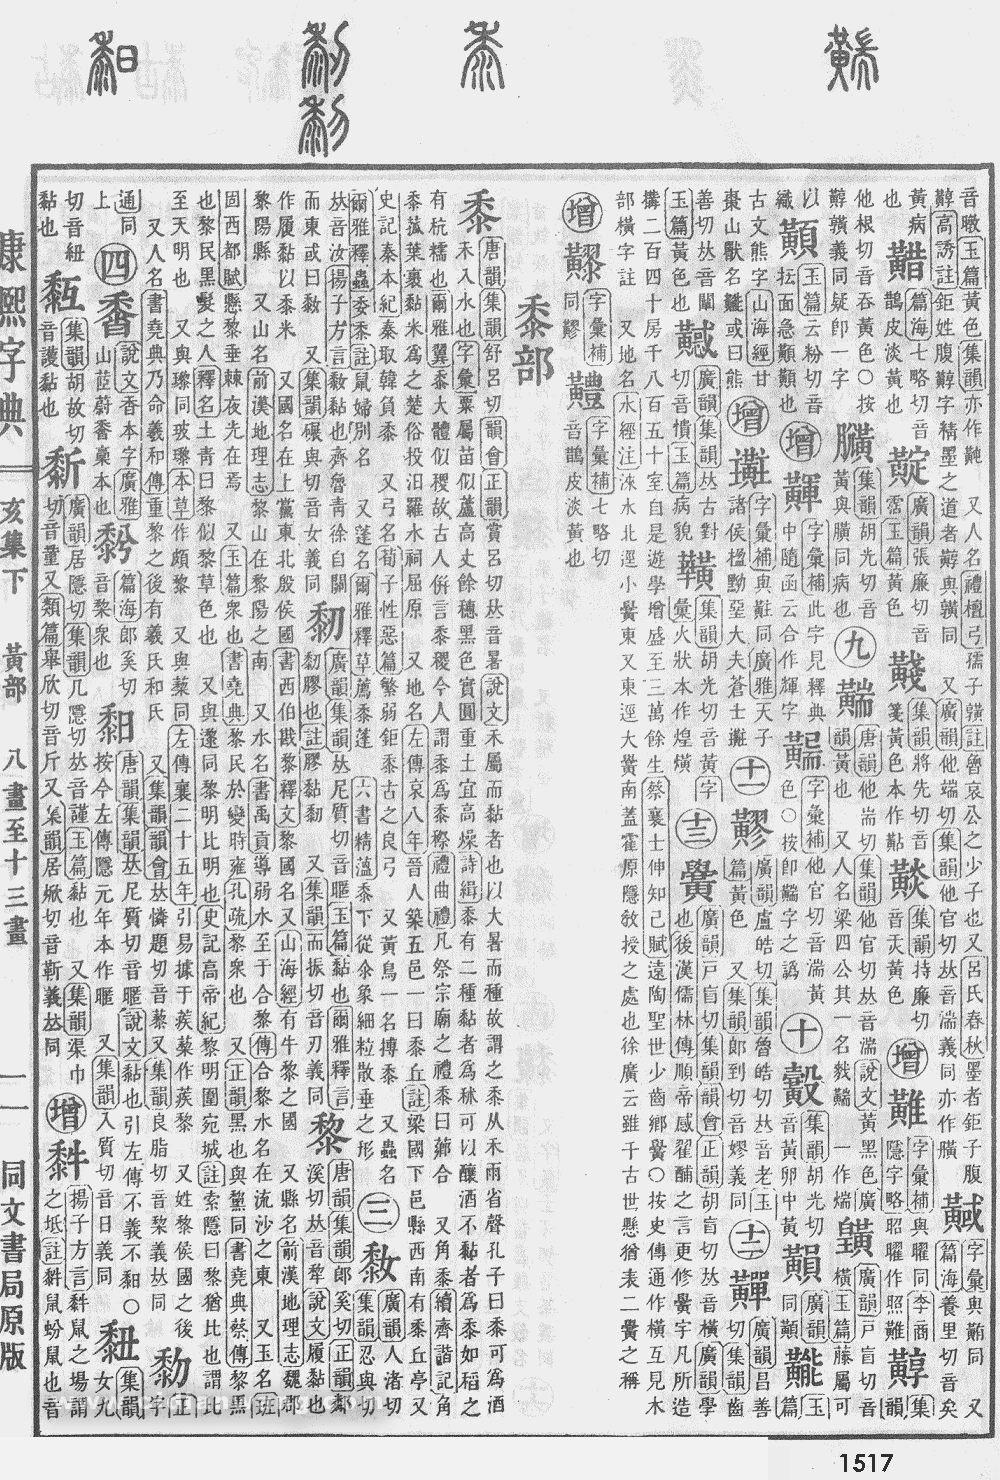 康熙字典掃描版第1517頁